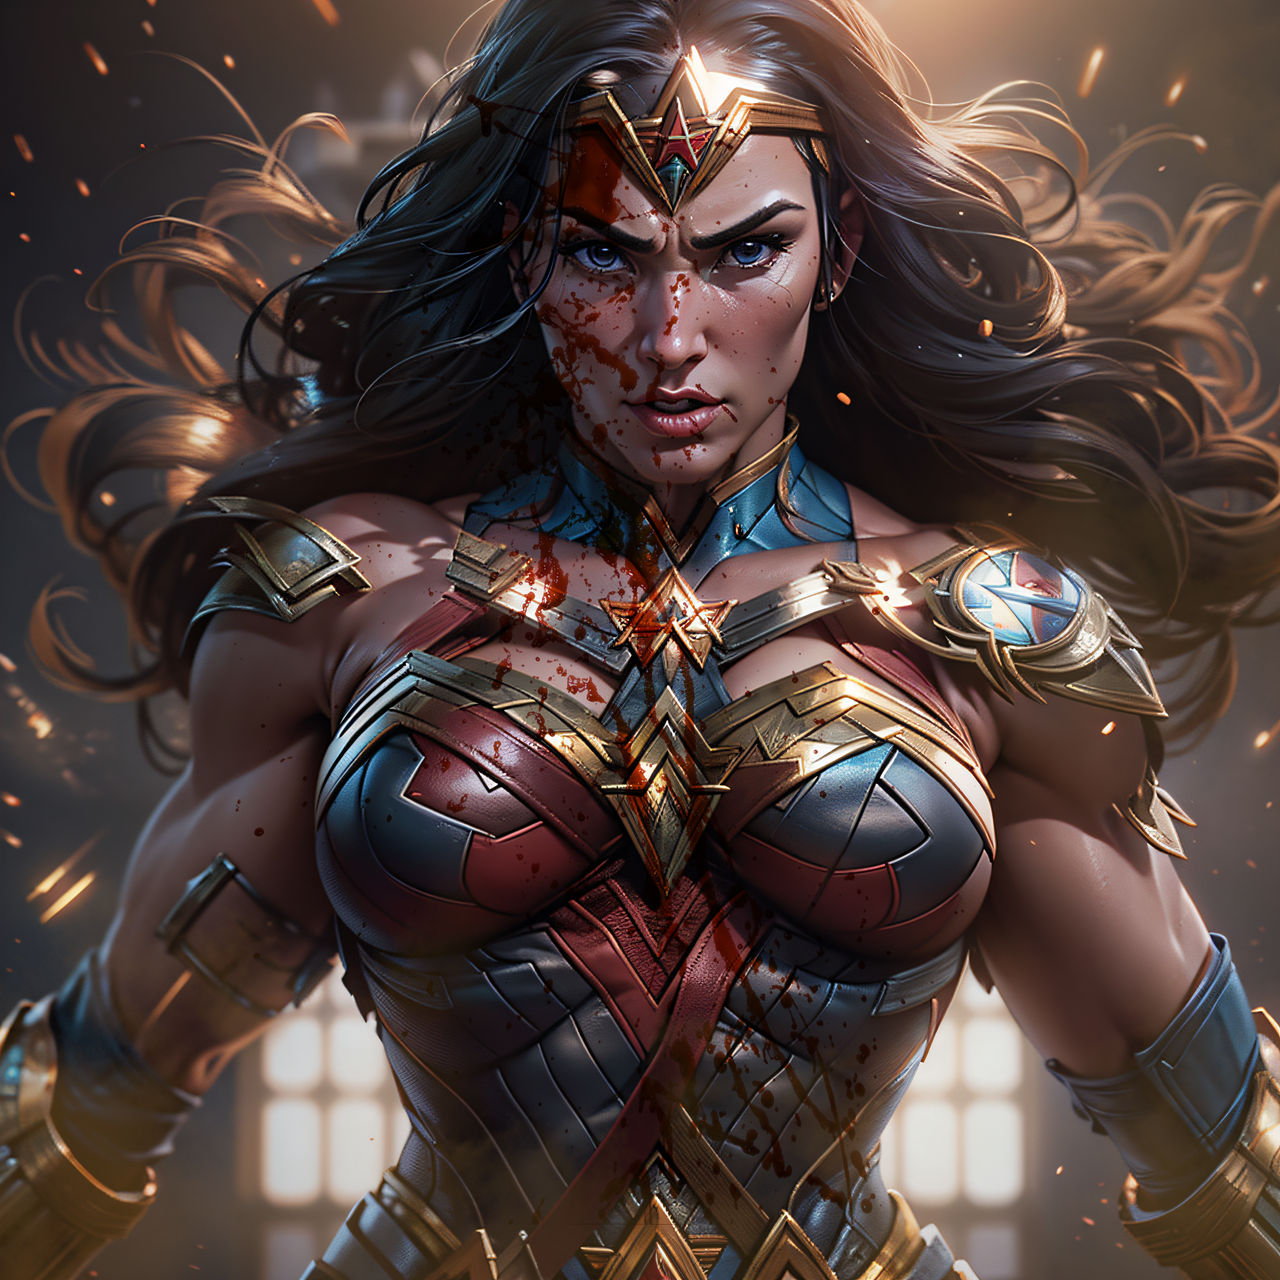 Battleborn: (Wonder Woman) vs. by NostalgicSUPERFAN on DeviantArt